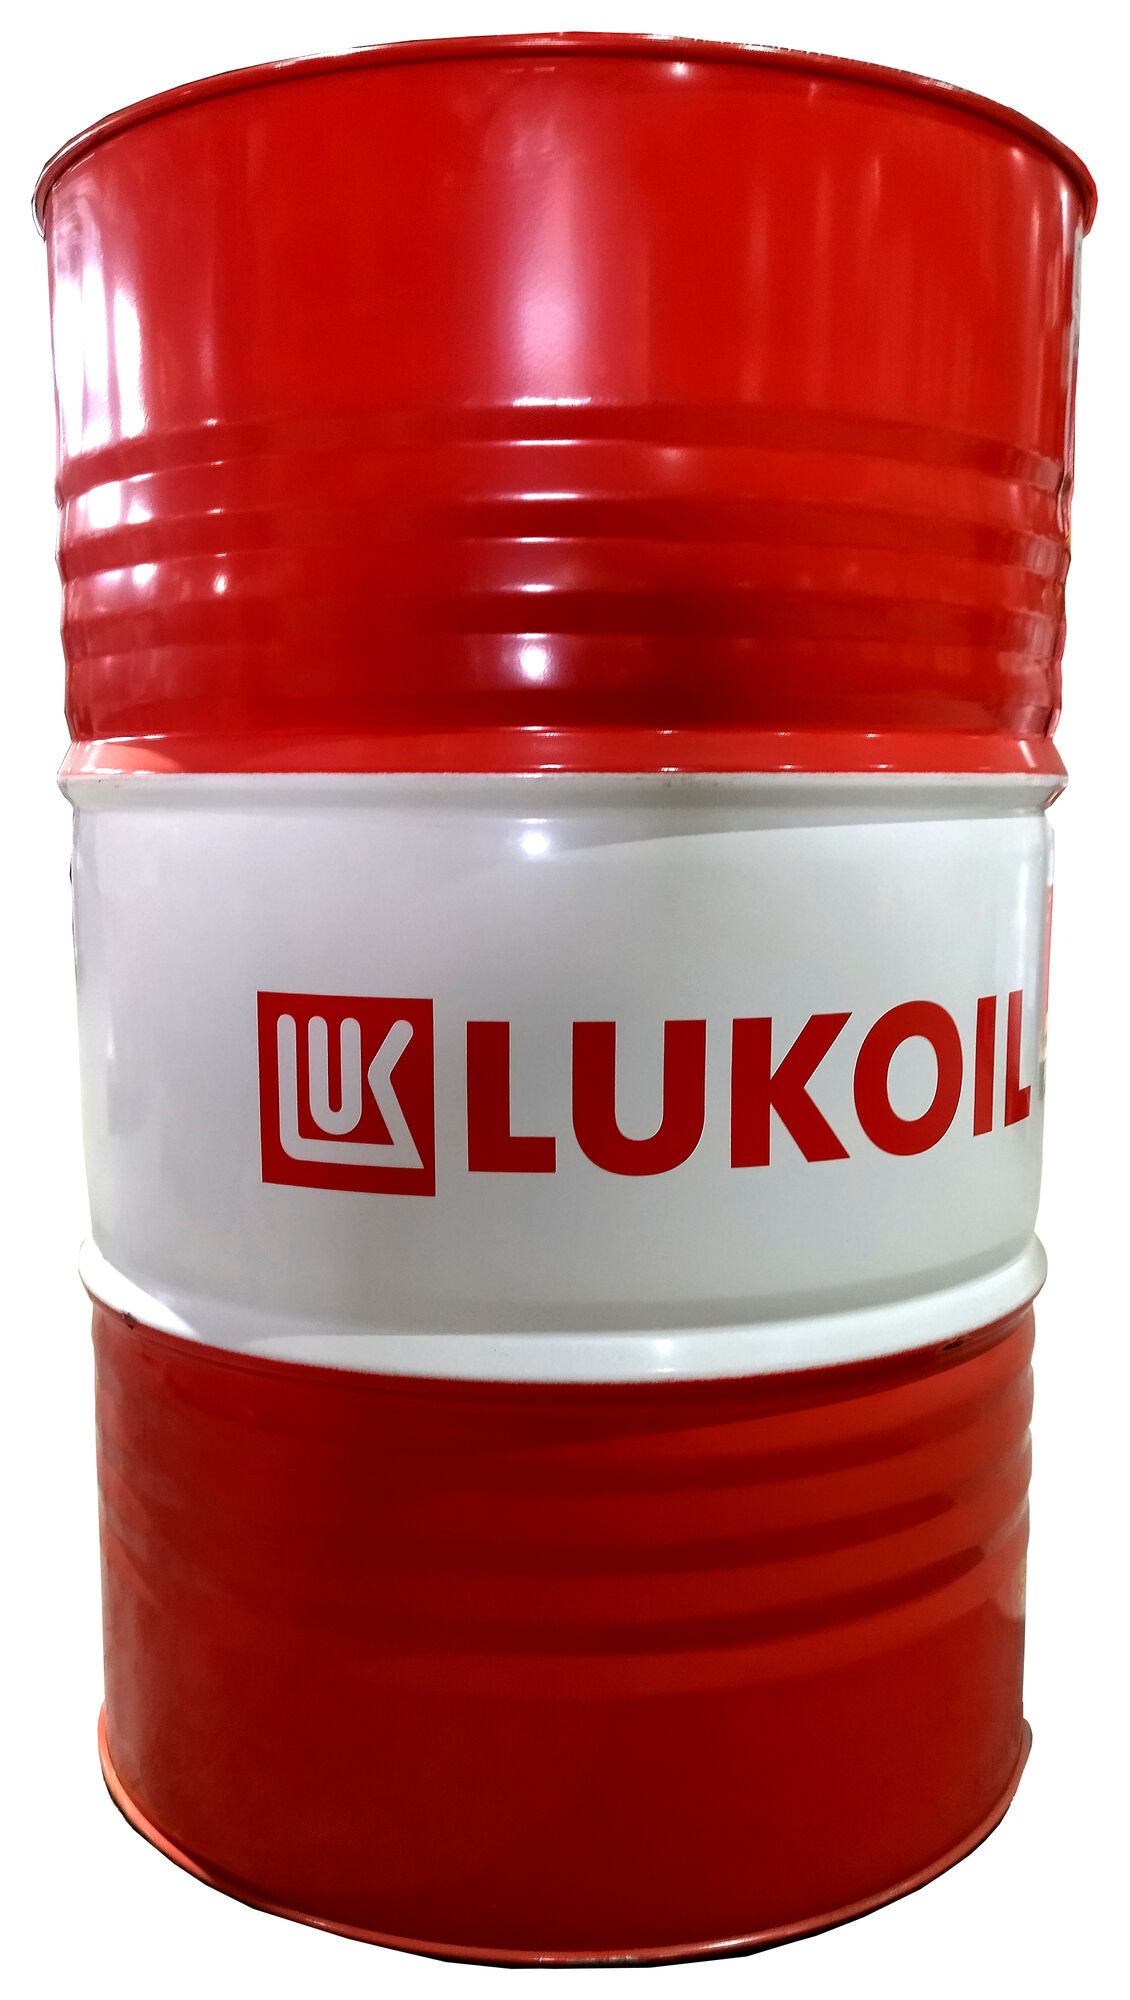 Моторное масло для легкового транспорта ЛУКОЙЛ ЛЮКС полусинтетическое SAE 5W-40, API SL/CF бочка 216,5 л